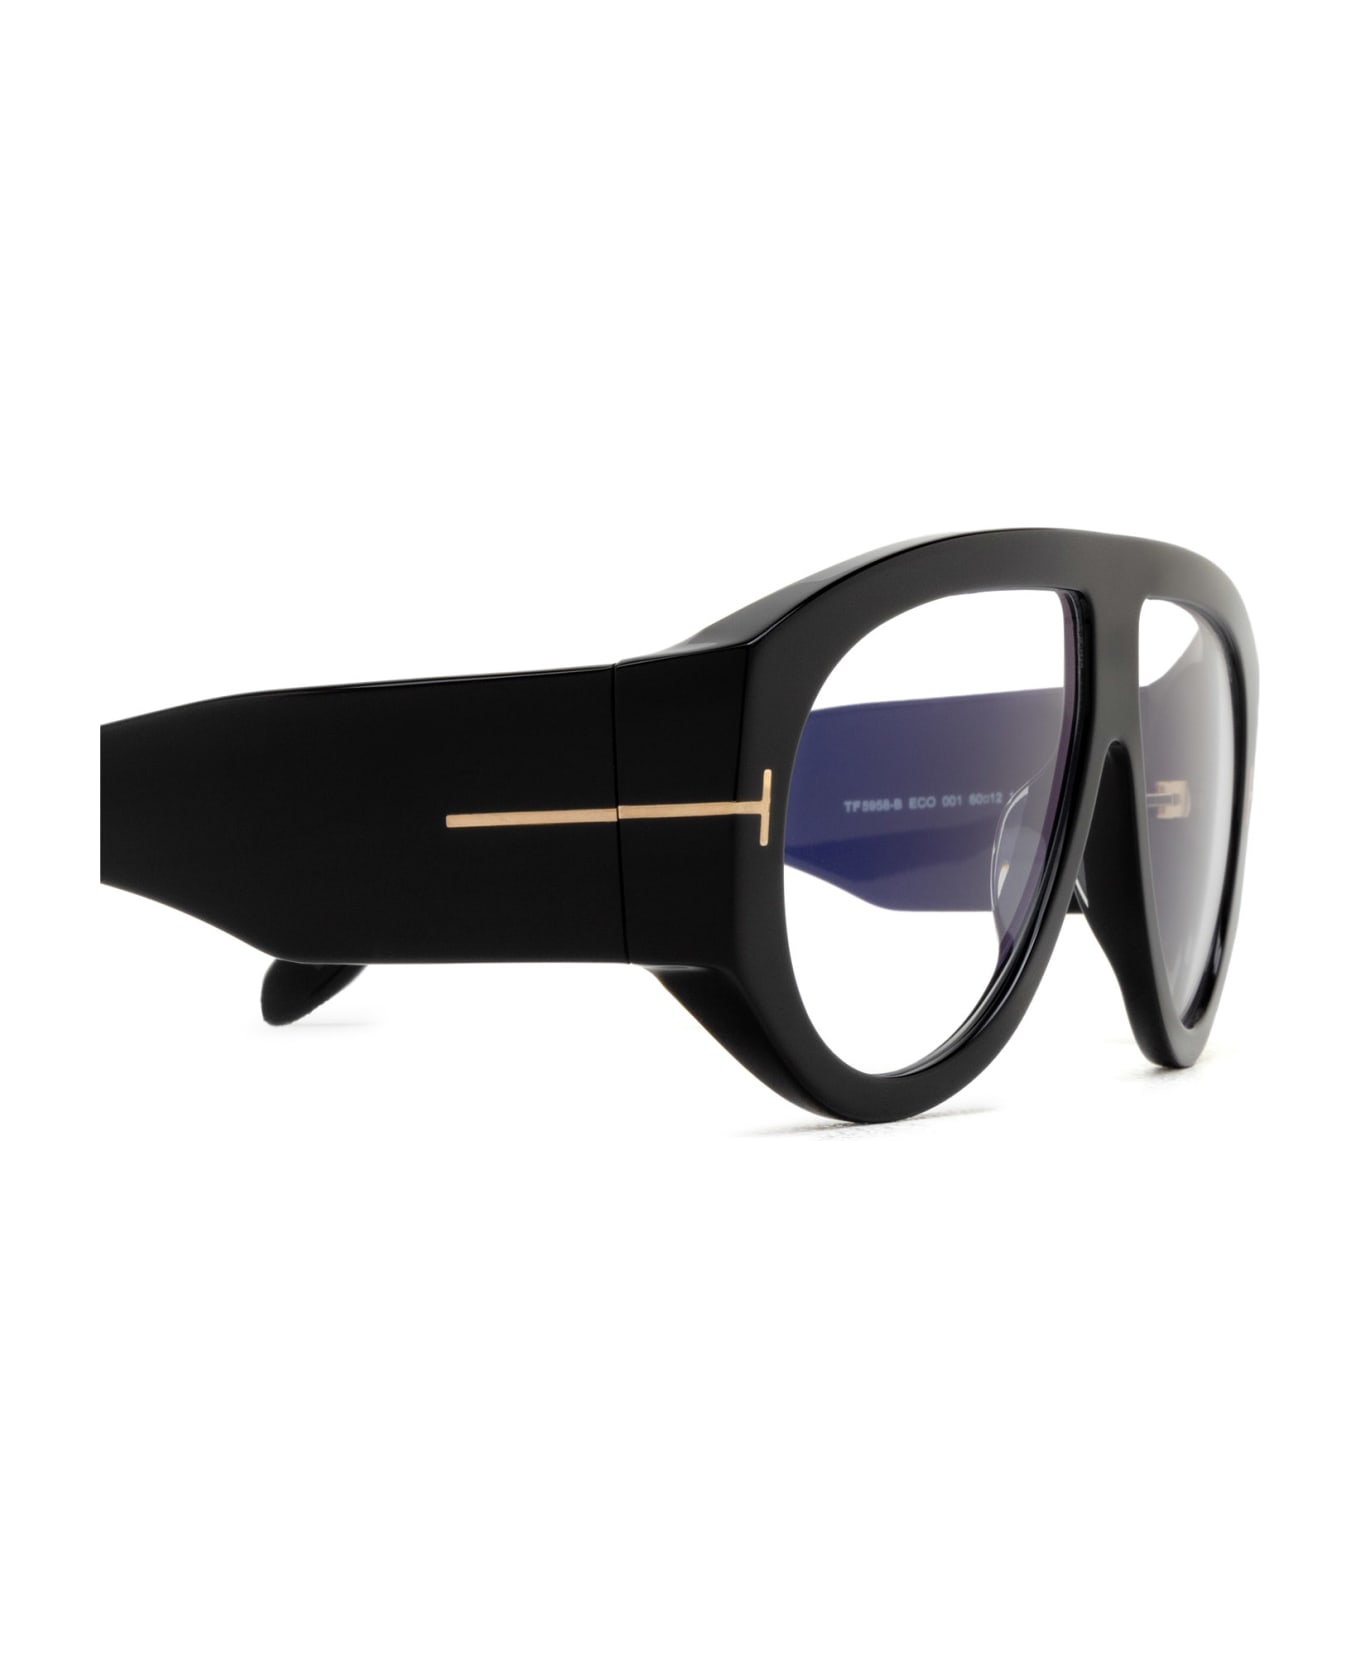 Tom Ford Eyewear Ft5958-b Shiny Black Glasses - Shiny Black アイウェア